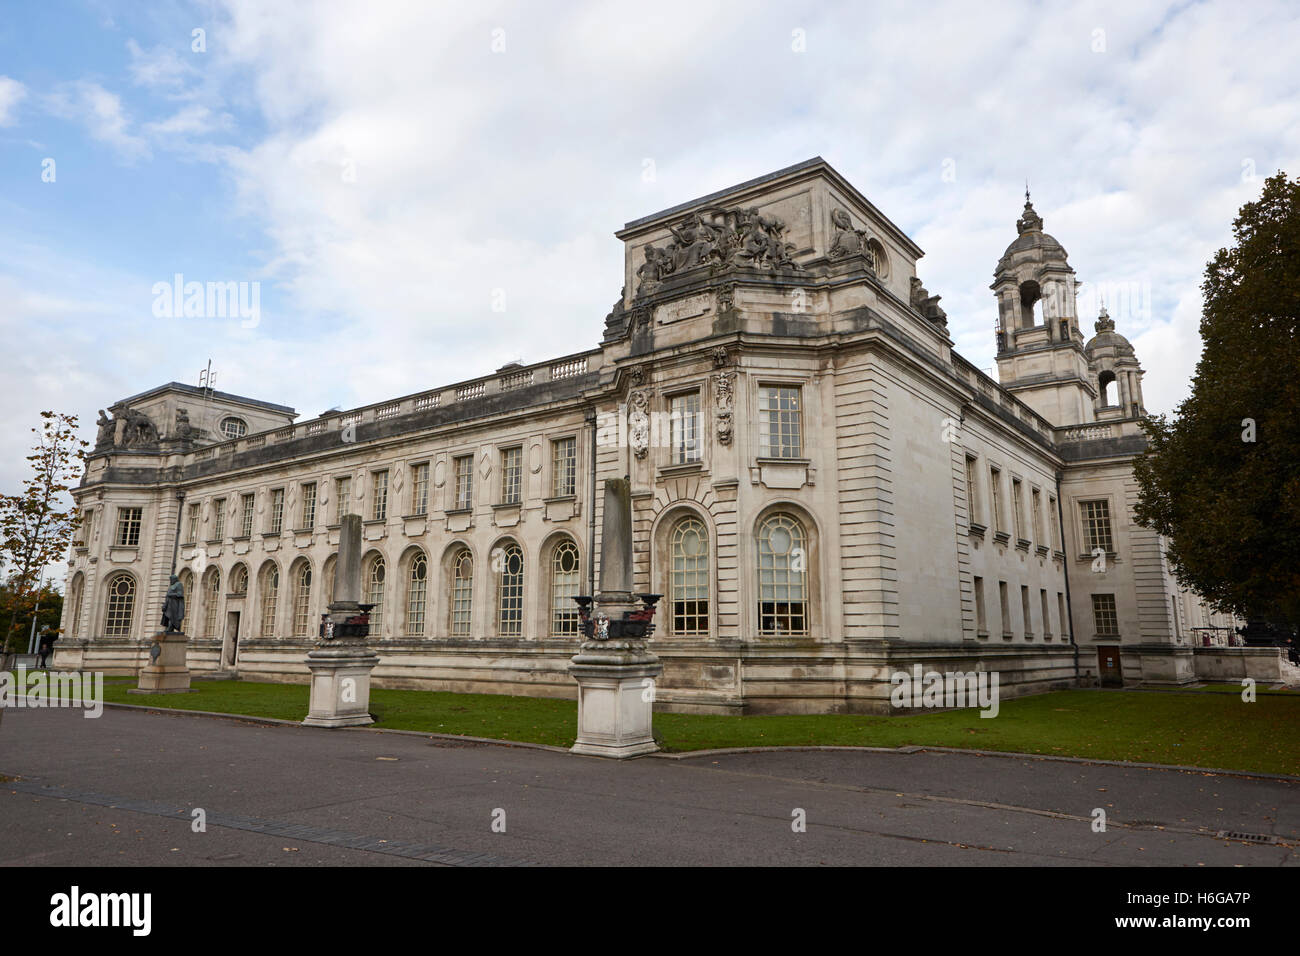 L'édifice de la couronne de Cardiff au Pays de Galles Royaume-Uni Banque D'Images